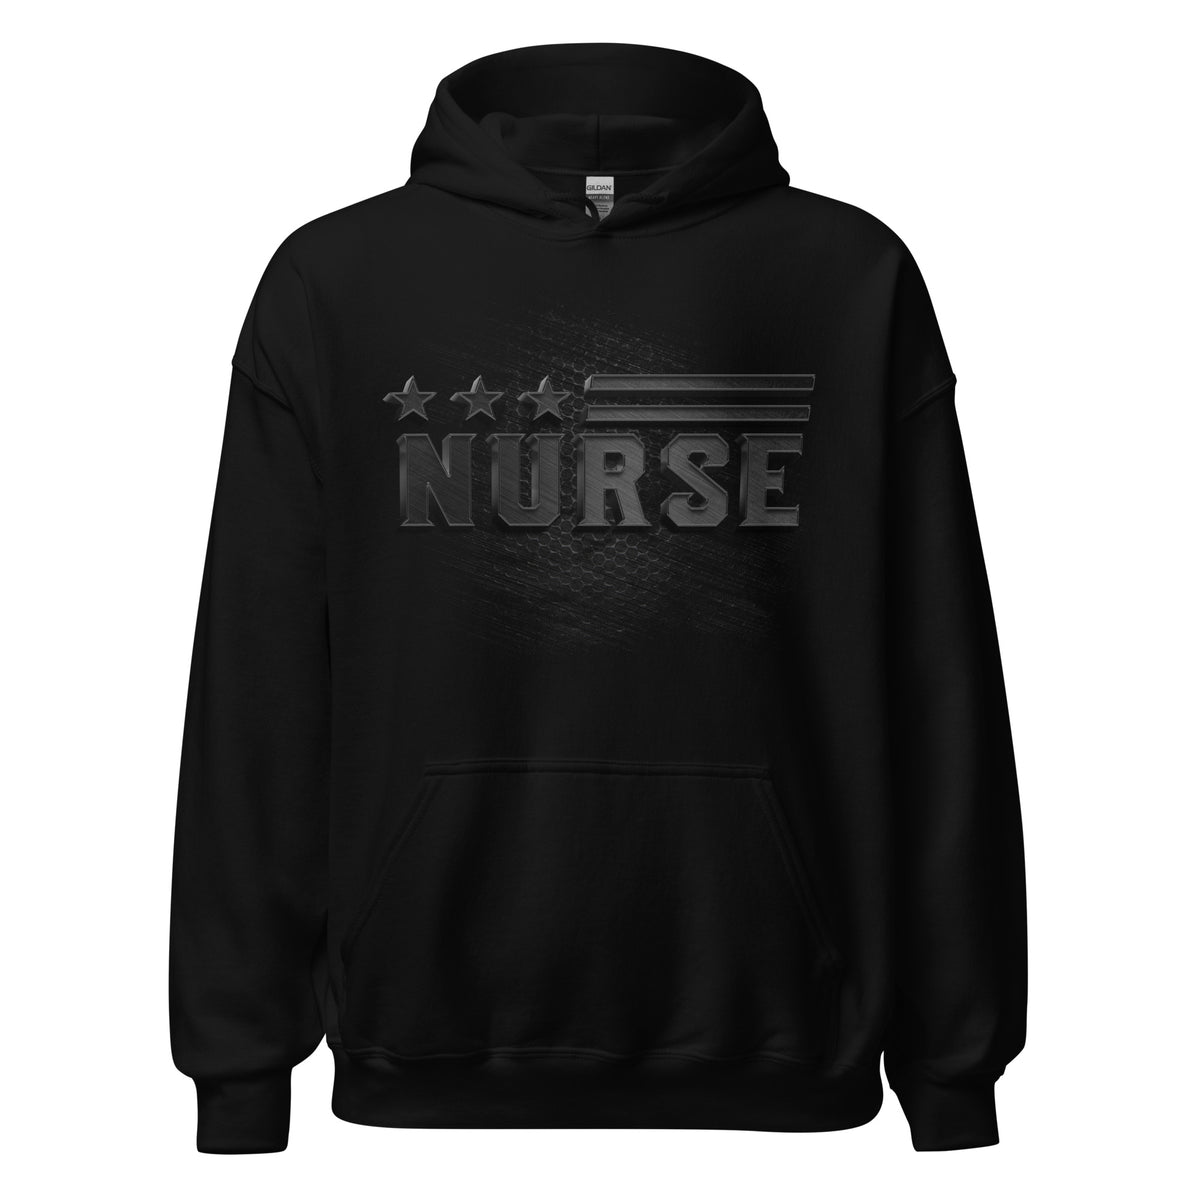 Nurse Black Carbon Hoodie